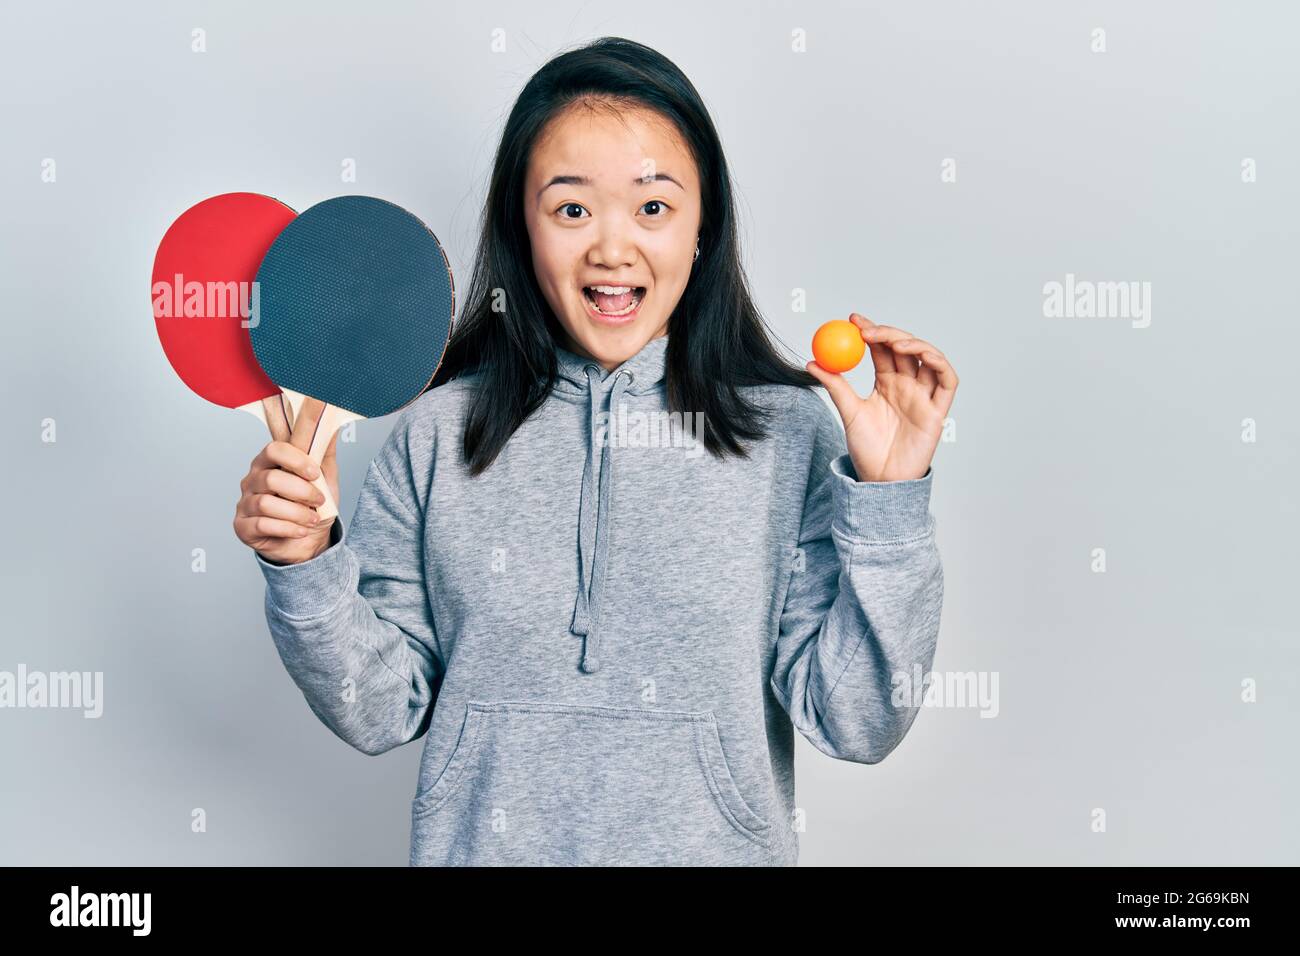 Junge chinesische Mädchen mit roten Ping-Pong-Schlägern und Ball feiern verrückt und erstaunt für den Erfolg mit offenen Augen schreiend aufgeregt. Stockfoto